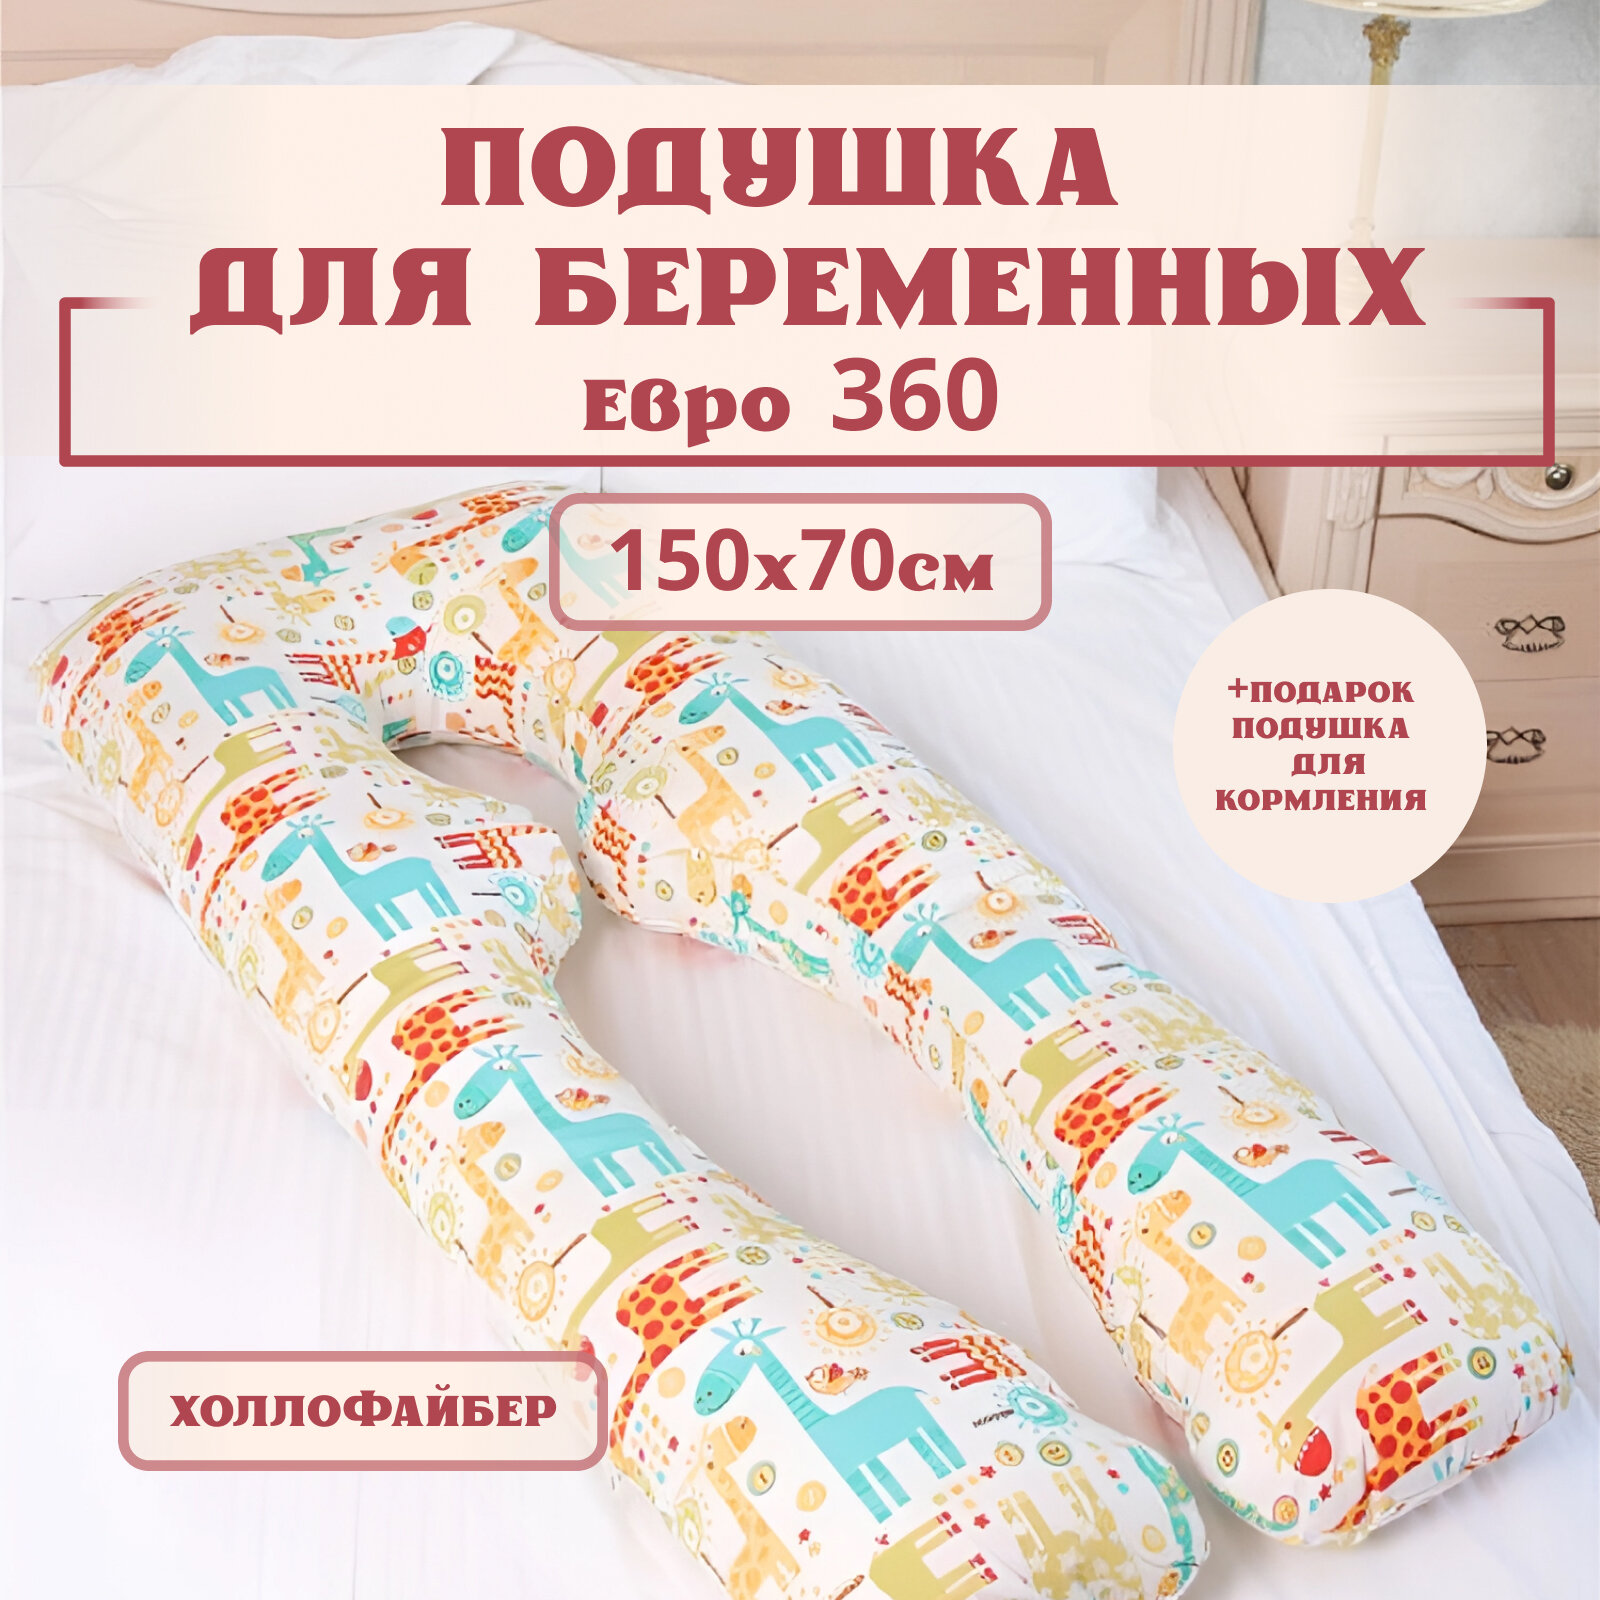 Подушка для беременных для сна и кормления анатомическая, Евро 360 150х70см, Жирафы, с холлофайбером + Подарок подушка для кормления